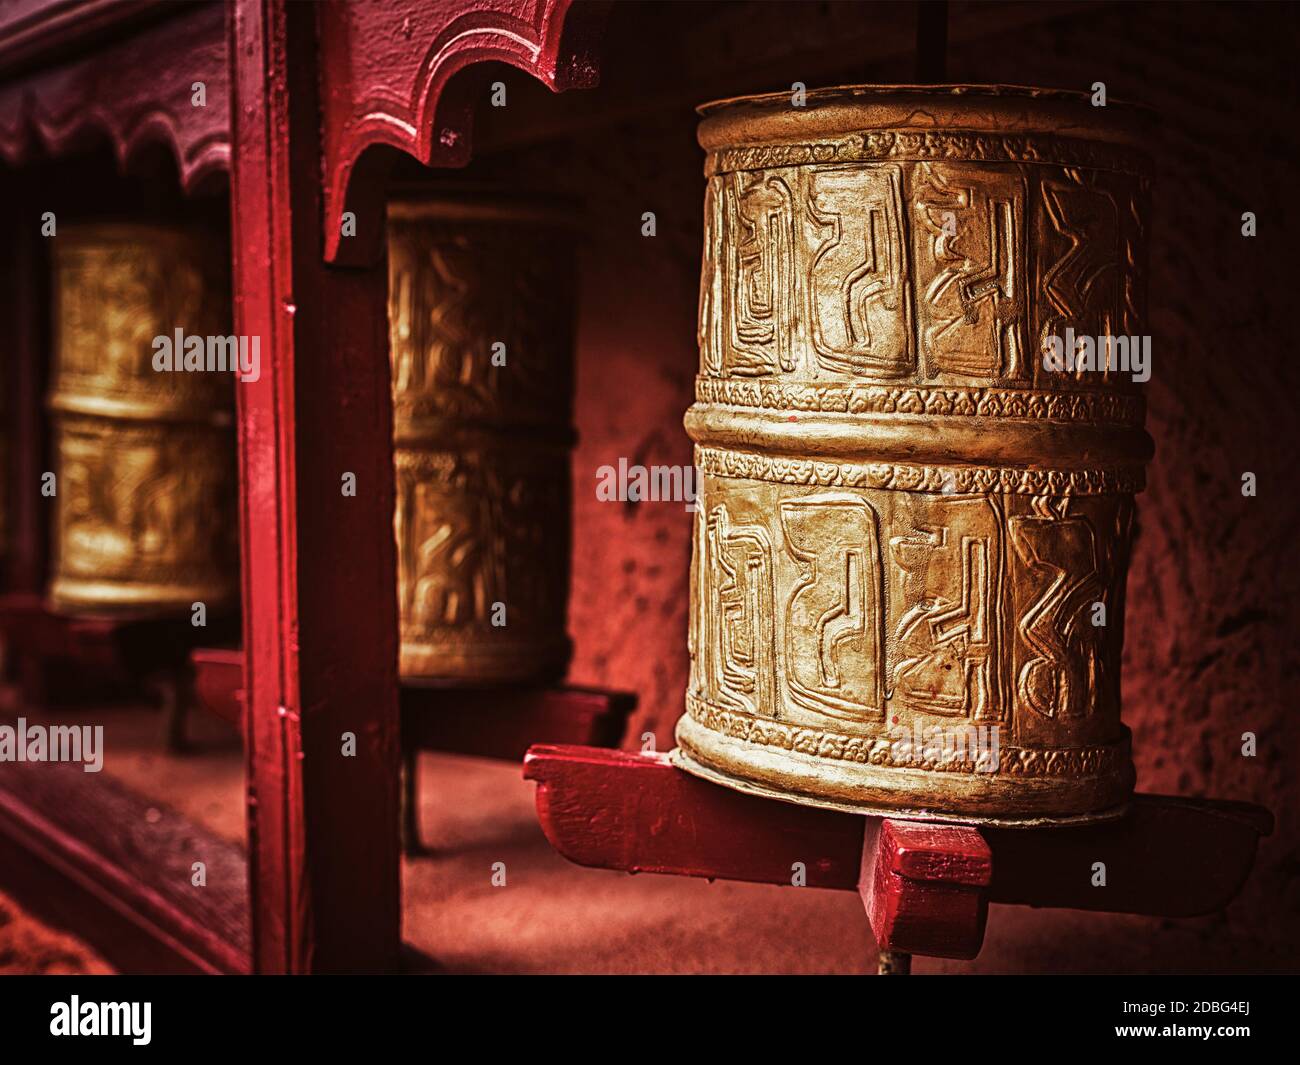 Immagine in stile hipster filtrata effetto retrò vintage delle ruote buddiste di preghiera in Thiksey gompa (monsterno buddista tibetano). Ladakh, India Foto Stock